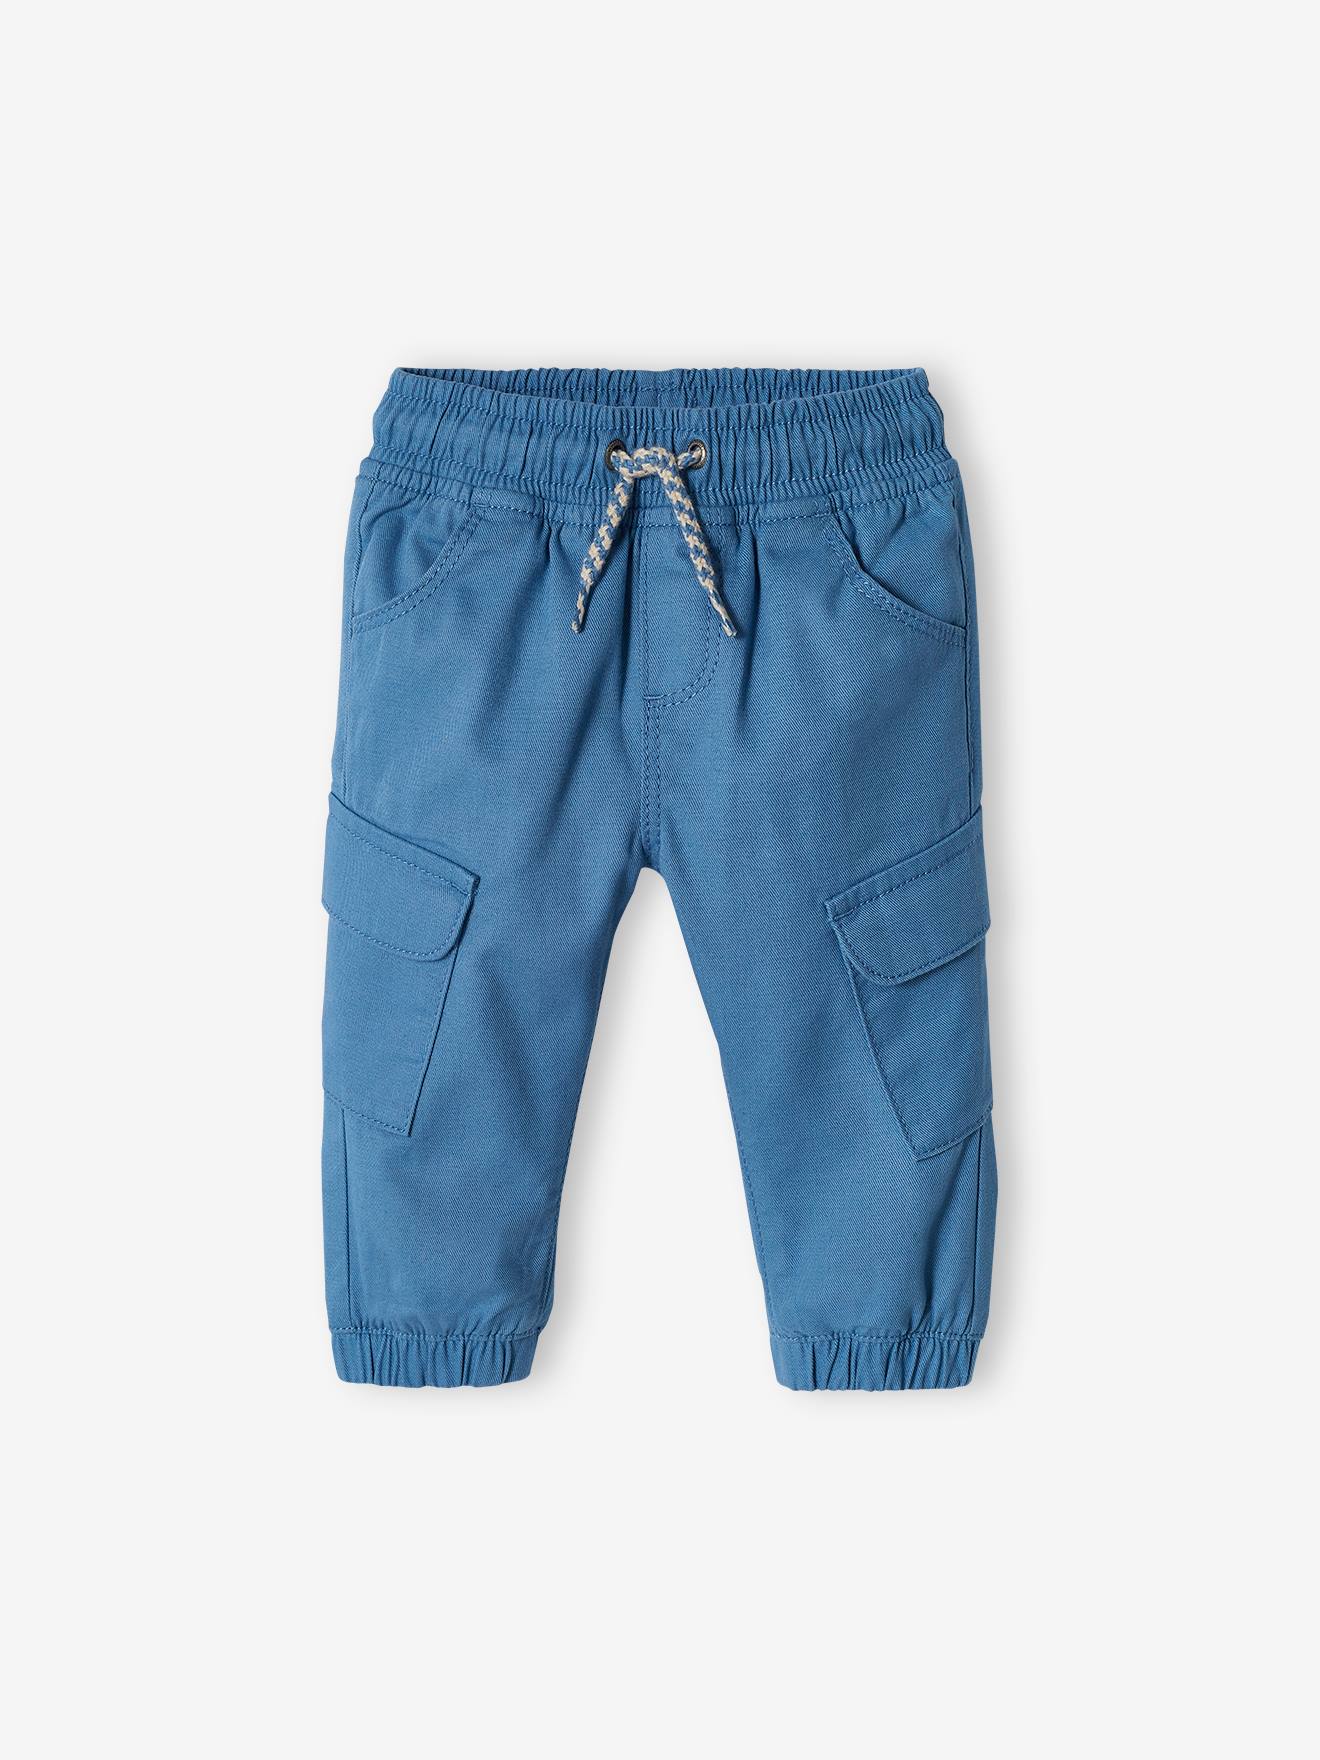 Pantalon battle bébé bleu jean